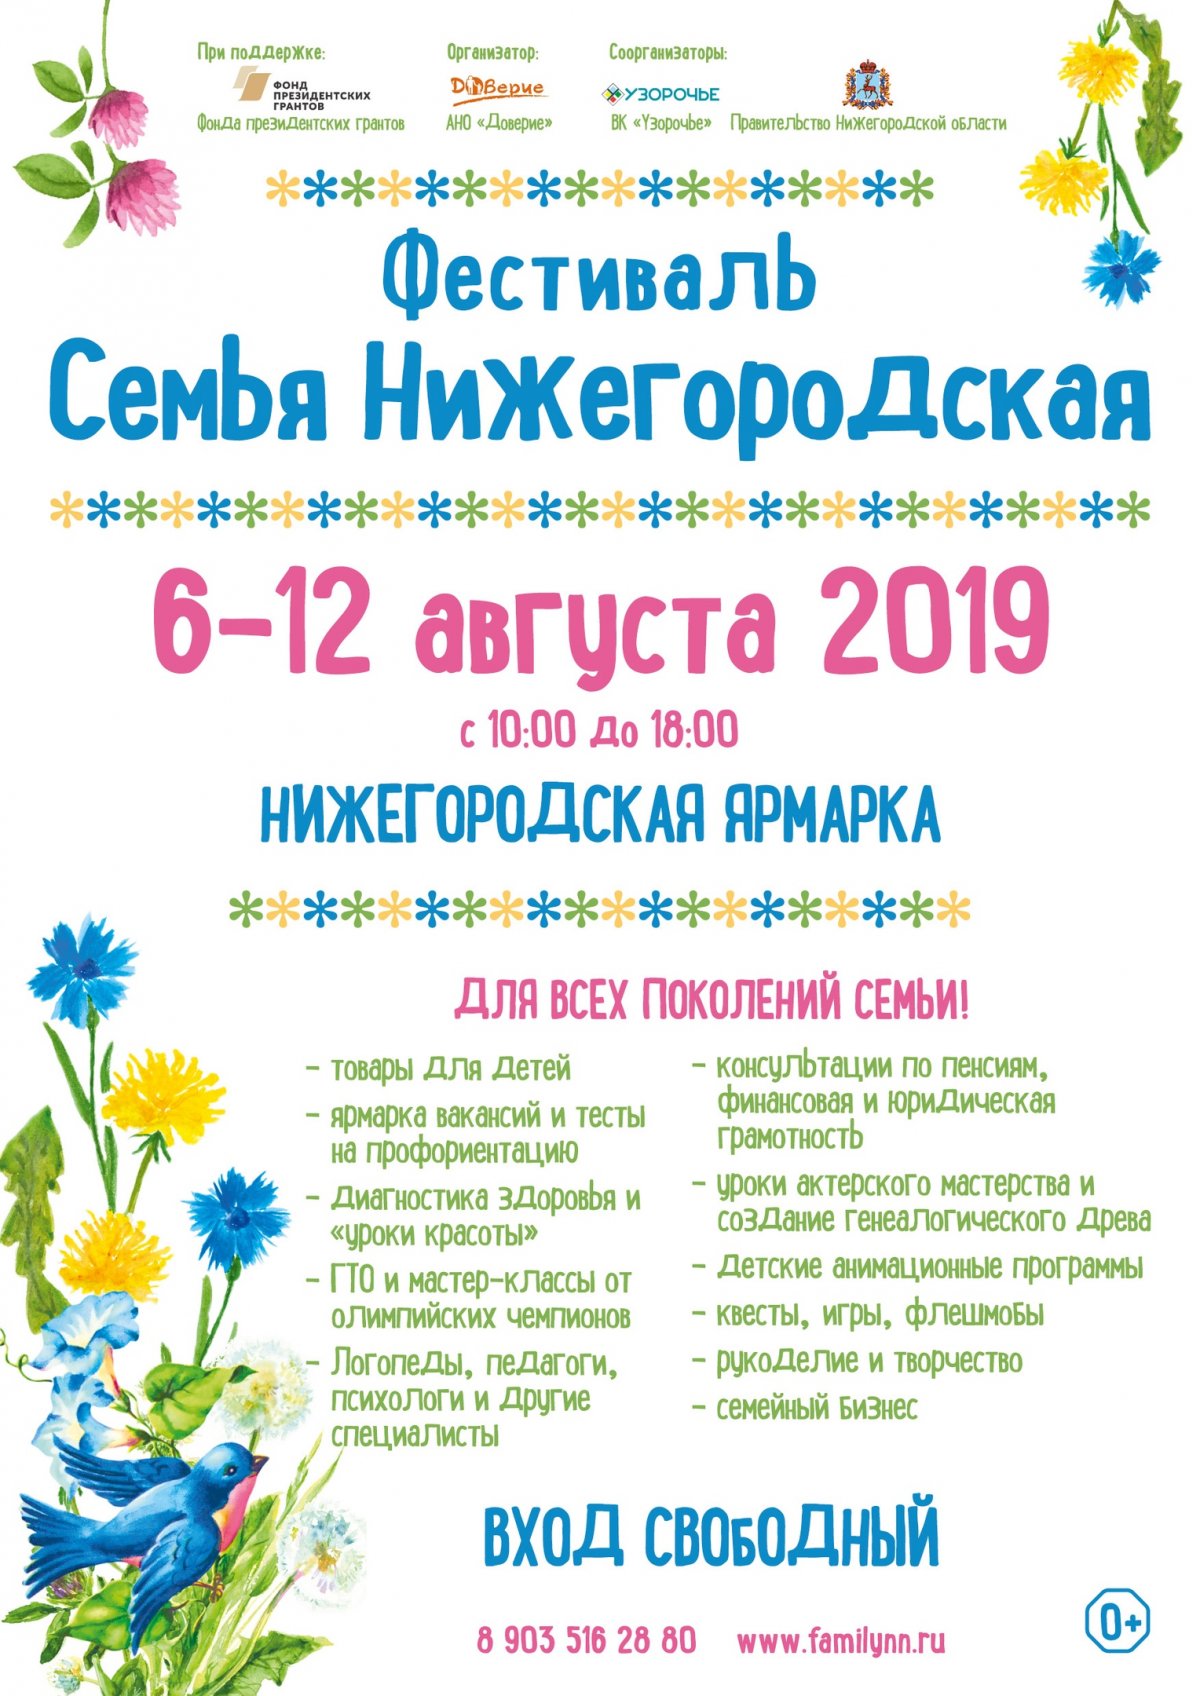 Специалисты Мининского университета проведут консультации на фестивале «Семья Нижегородская»